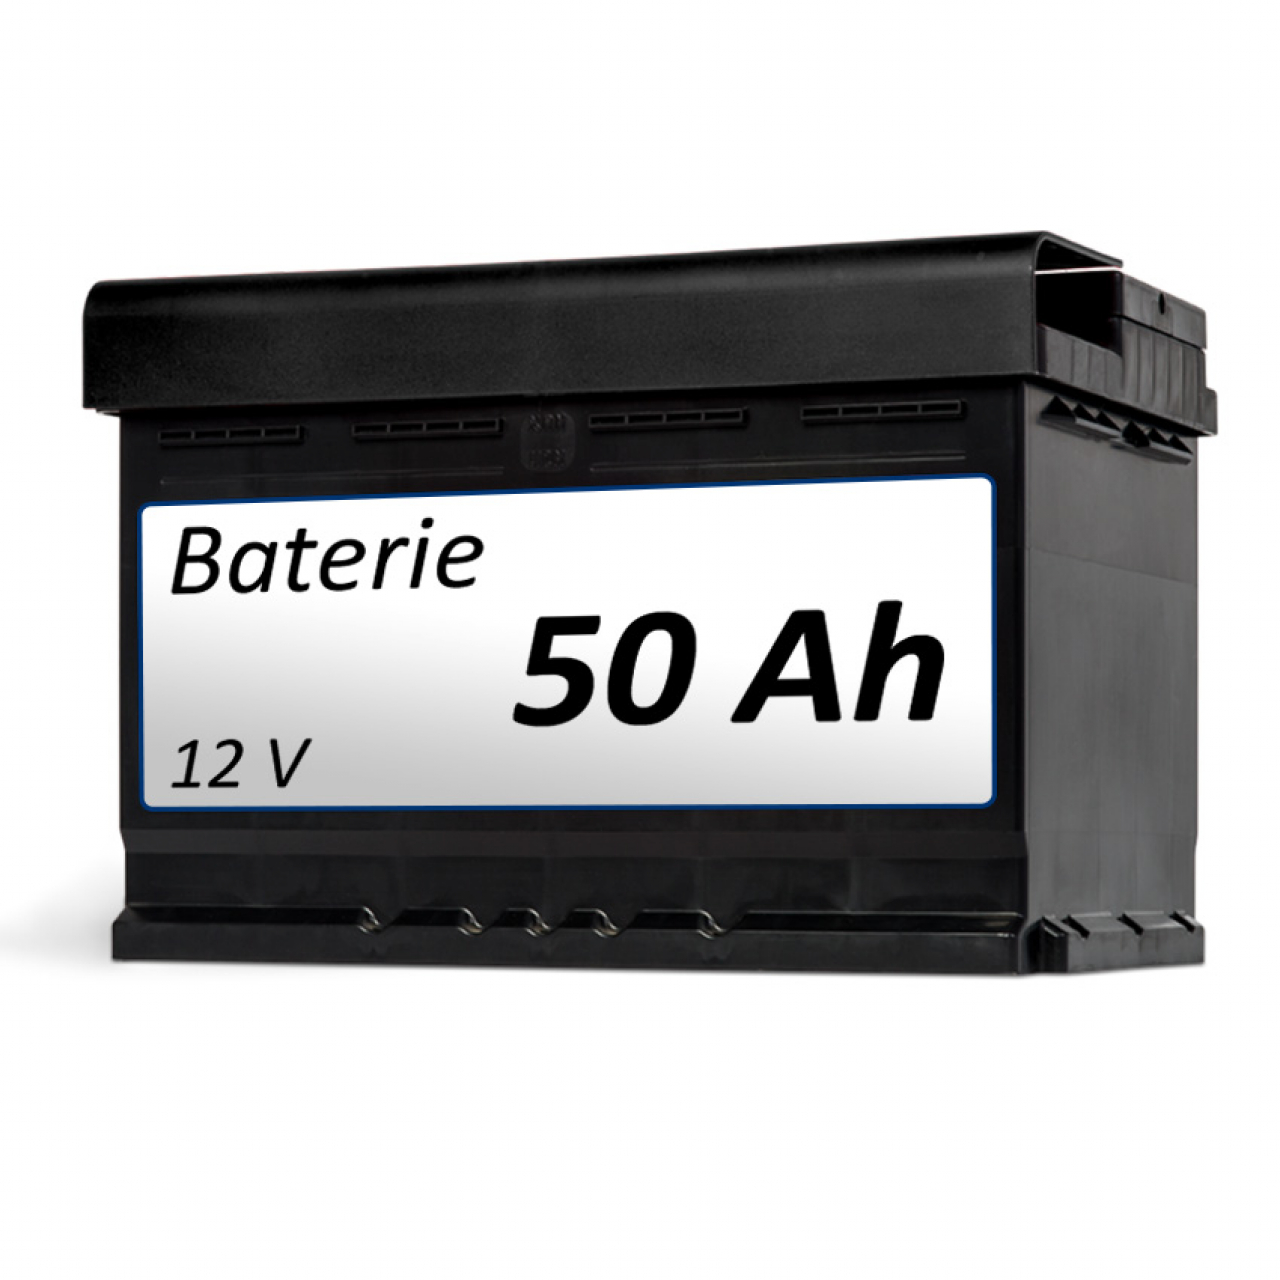 Baterie k elektrickému vozíku Baterie 50 Ah - k vozíku foto